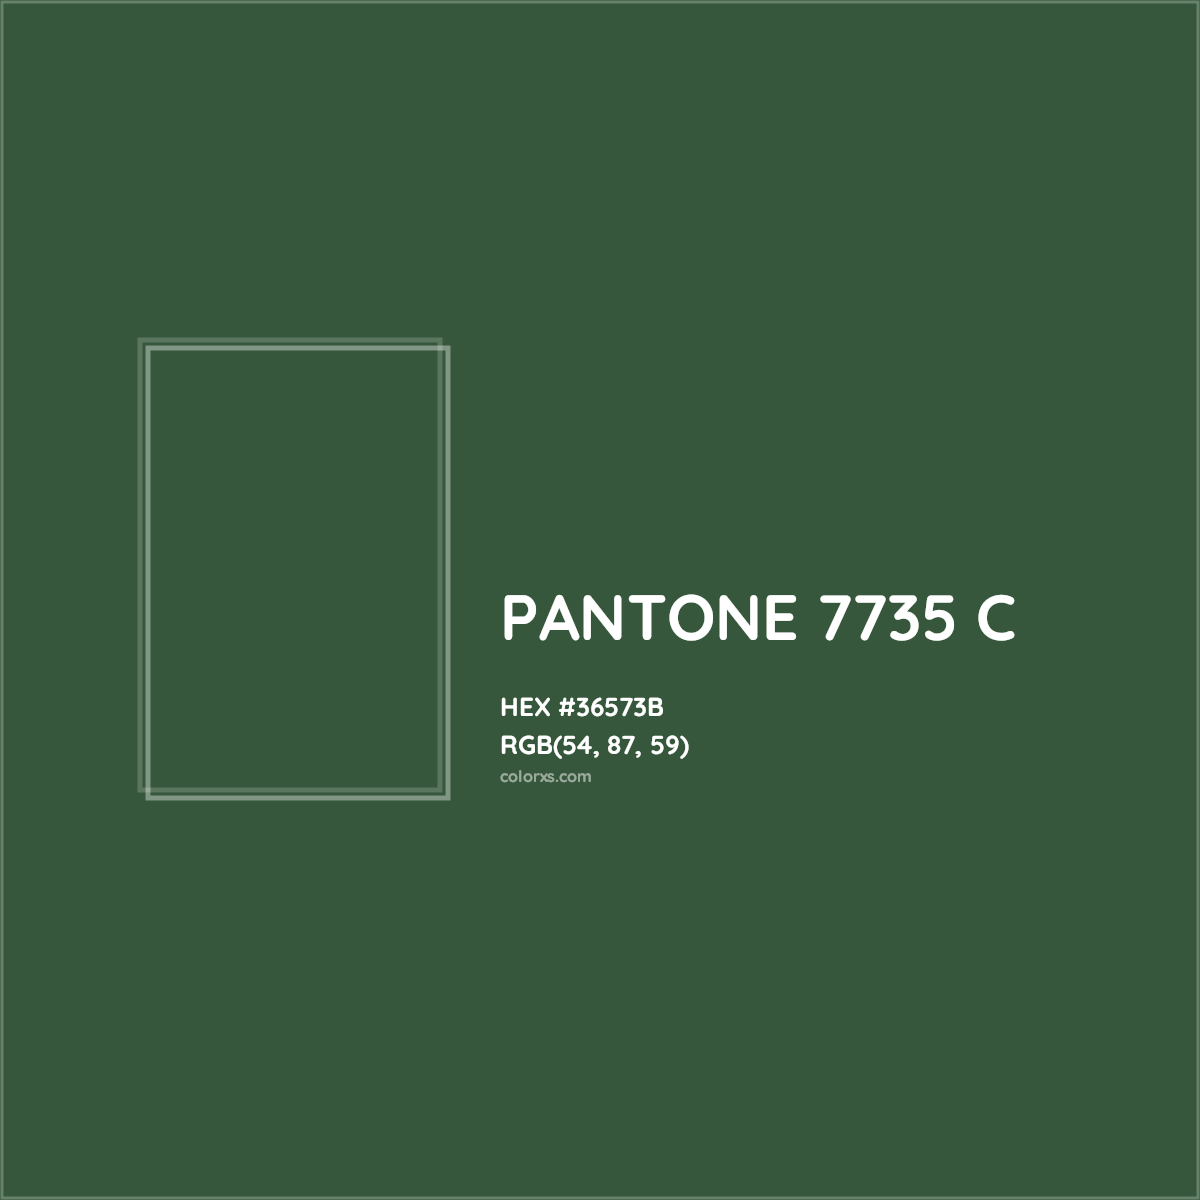 HEX #36573B PANTONE 7735 C CMS Pantone PMS - Color Code